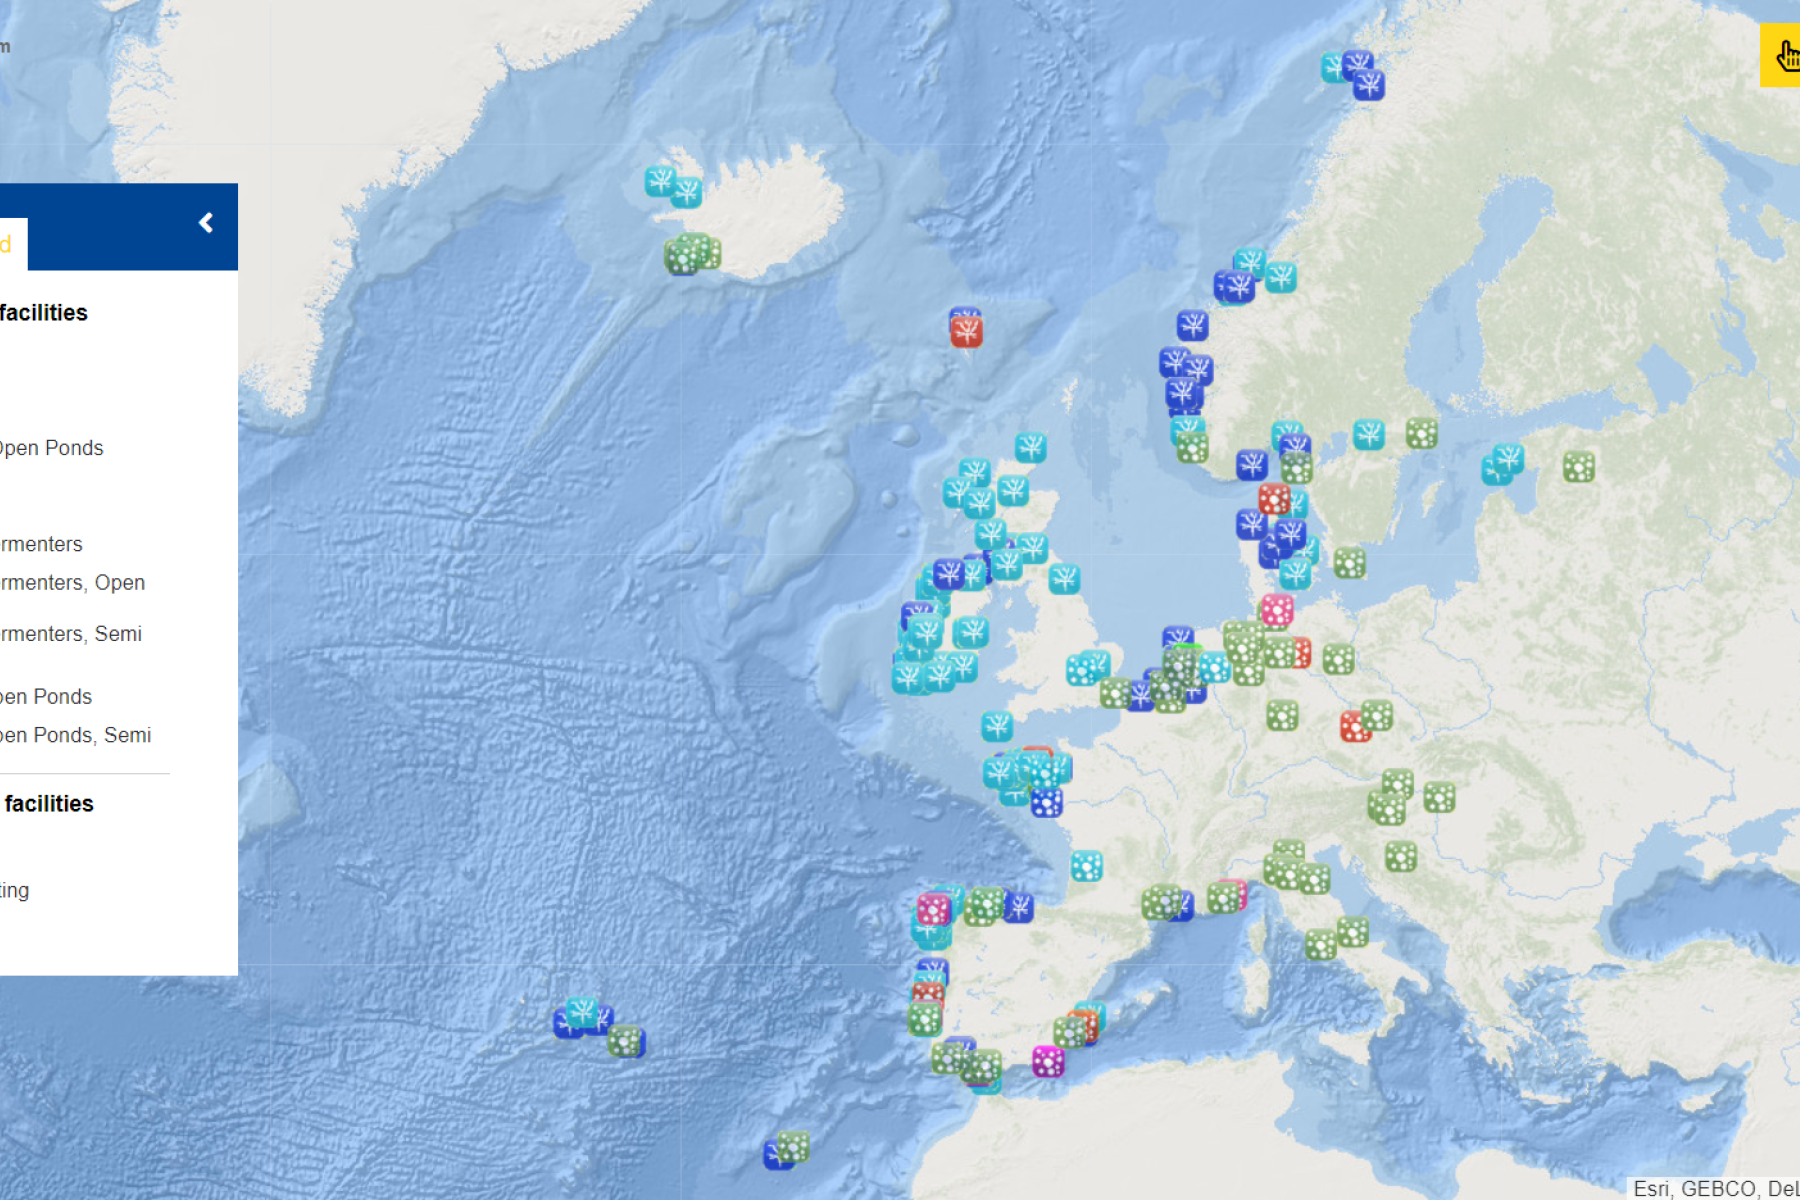 European Atlas of the Seas, © European Union, 2022.